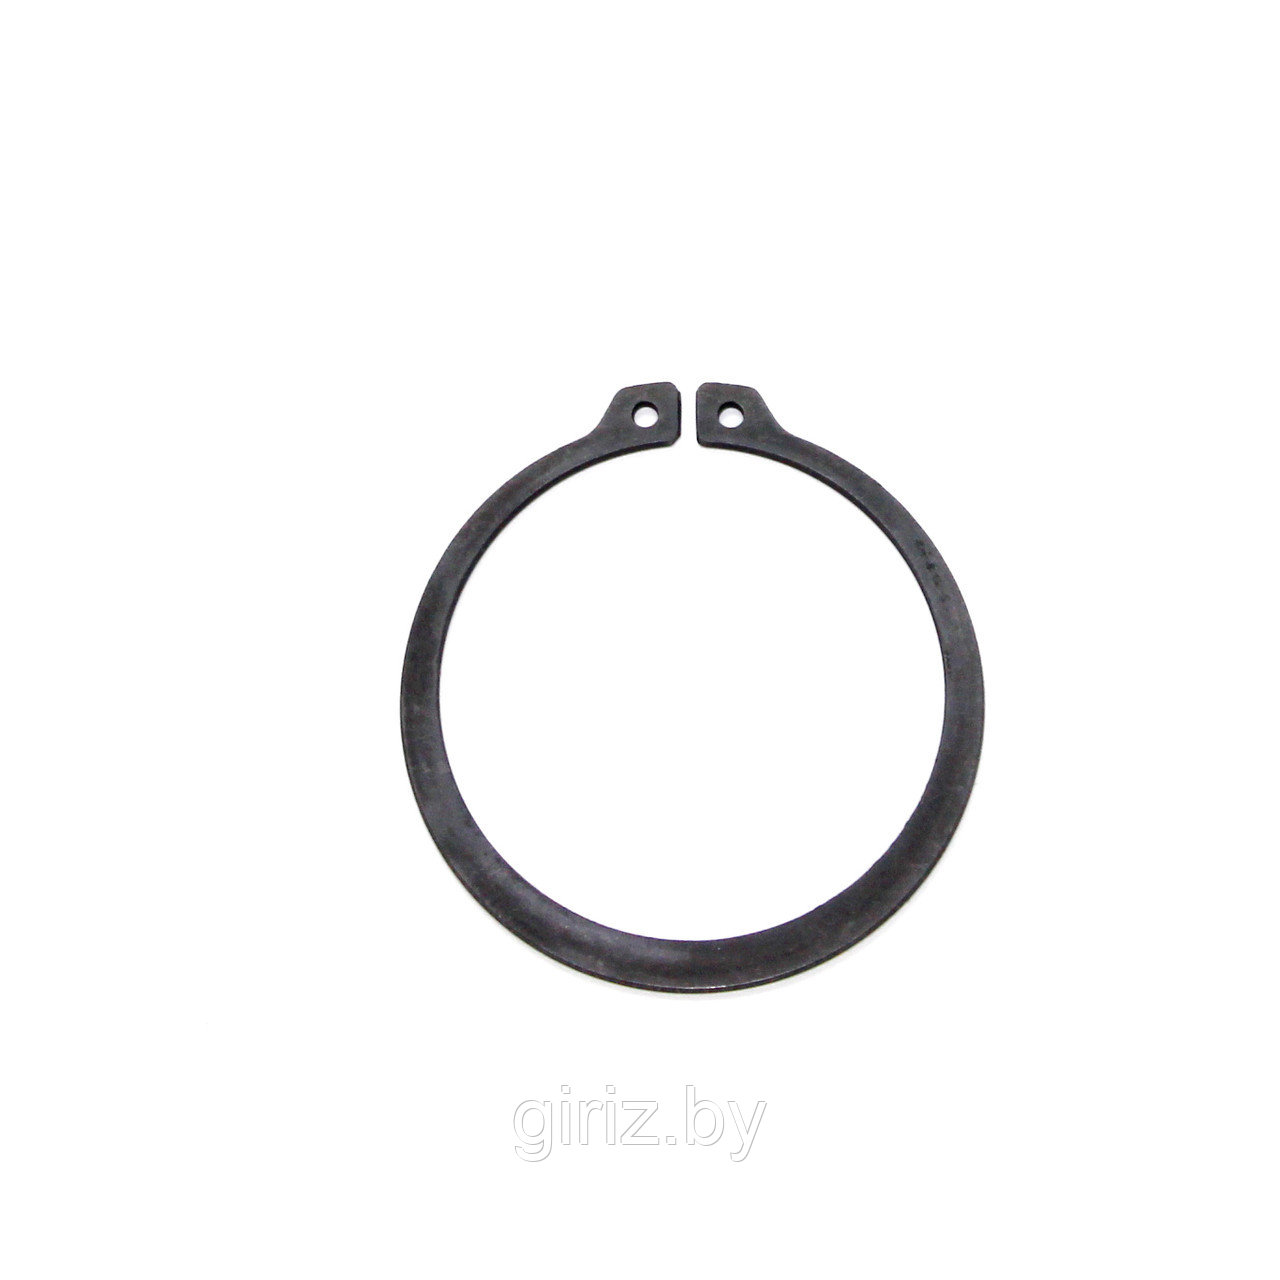 Стопорное кольцо DIN 471 22 мм (с ушками)